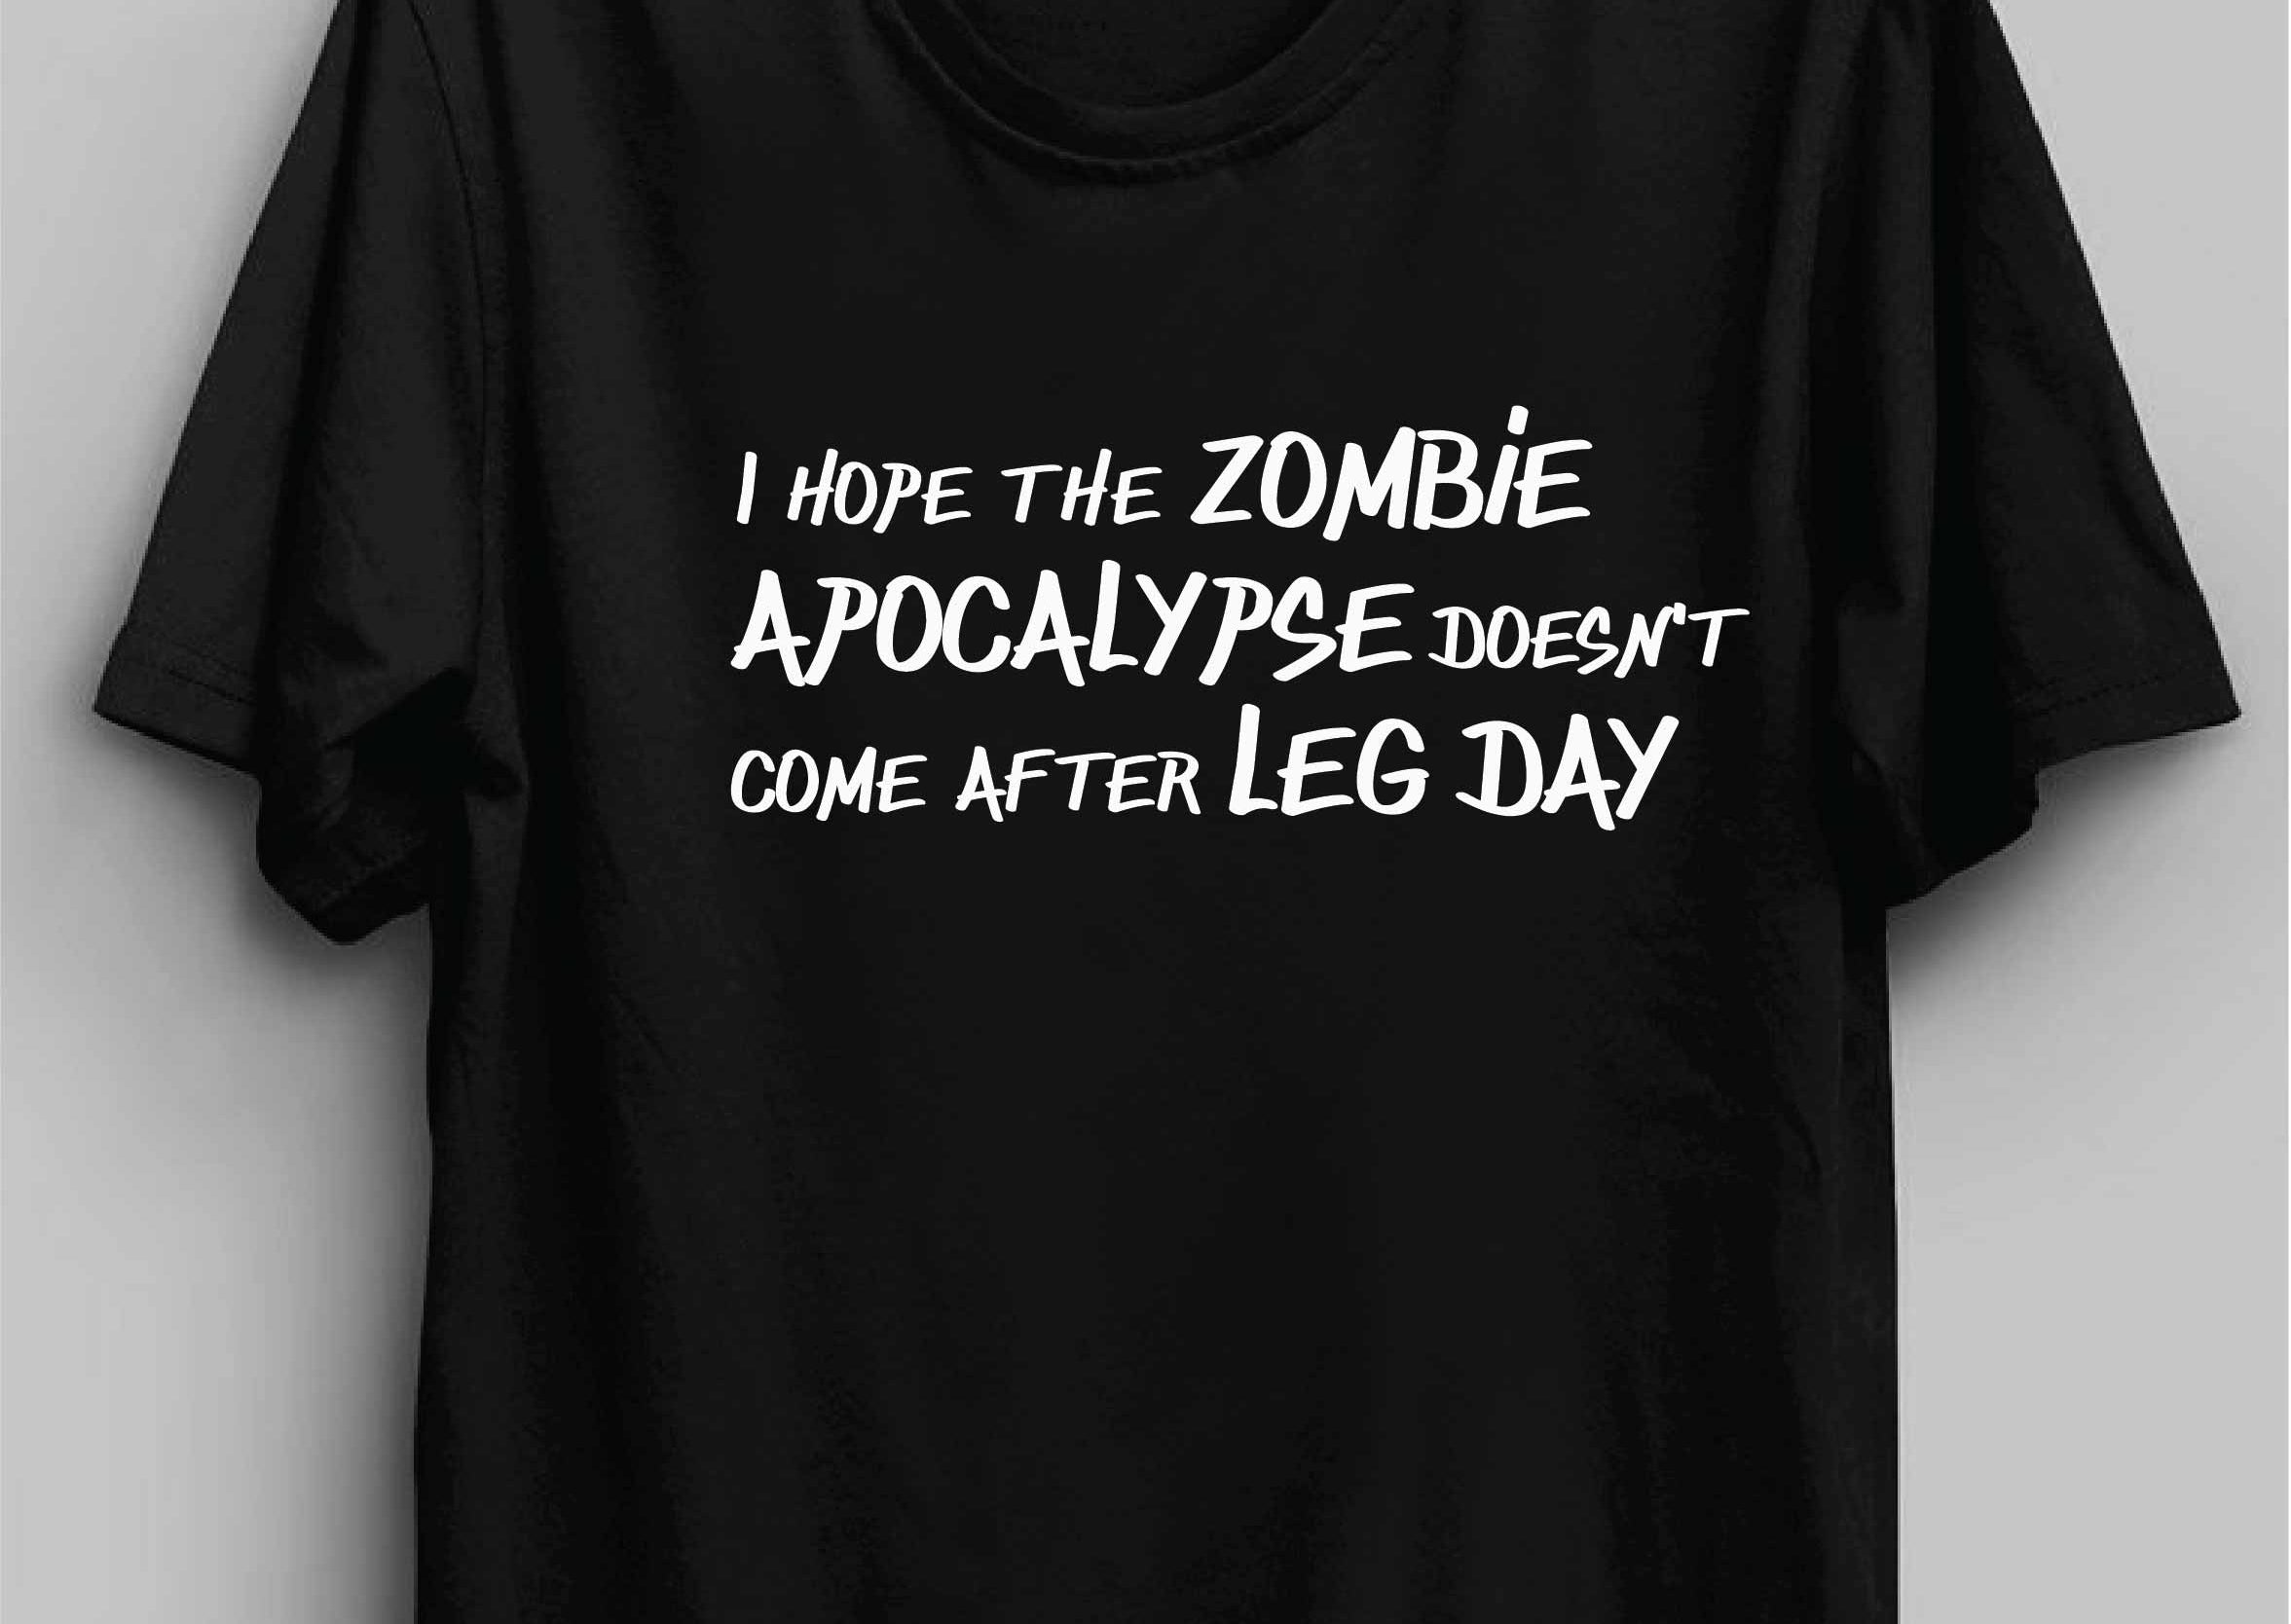 Zombie Apocalypse Reactr Tshirts For Men - Eyewearlabs